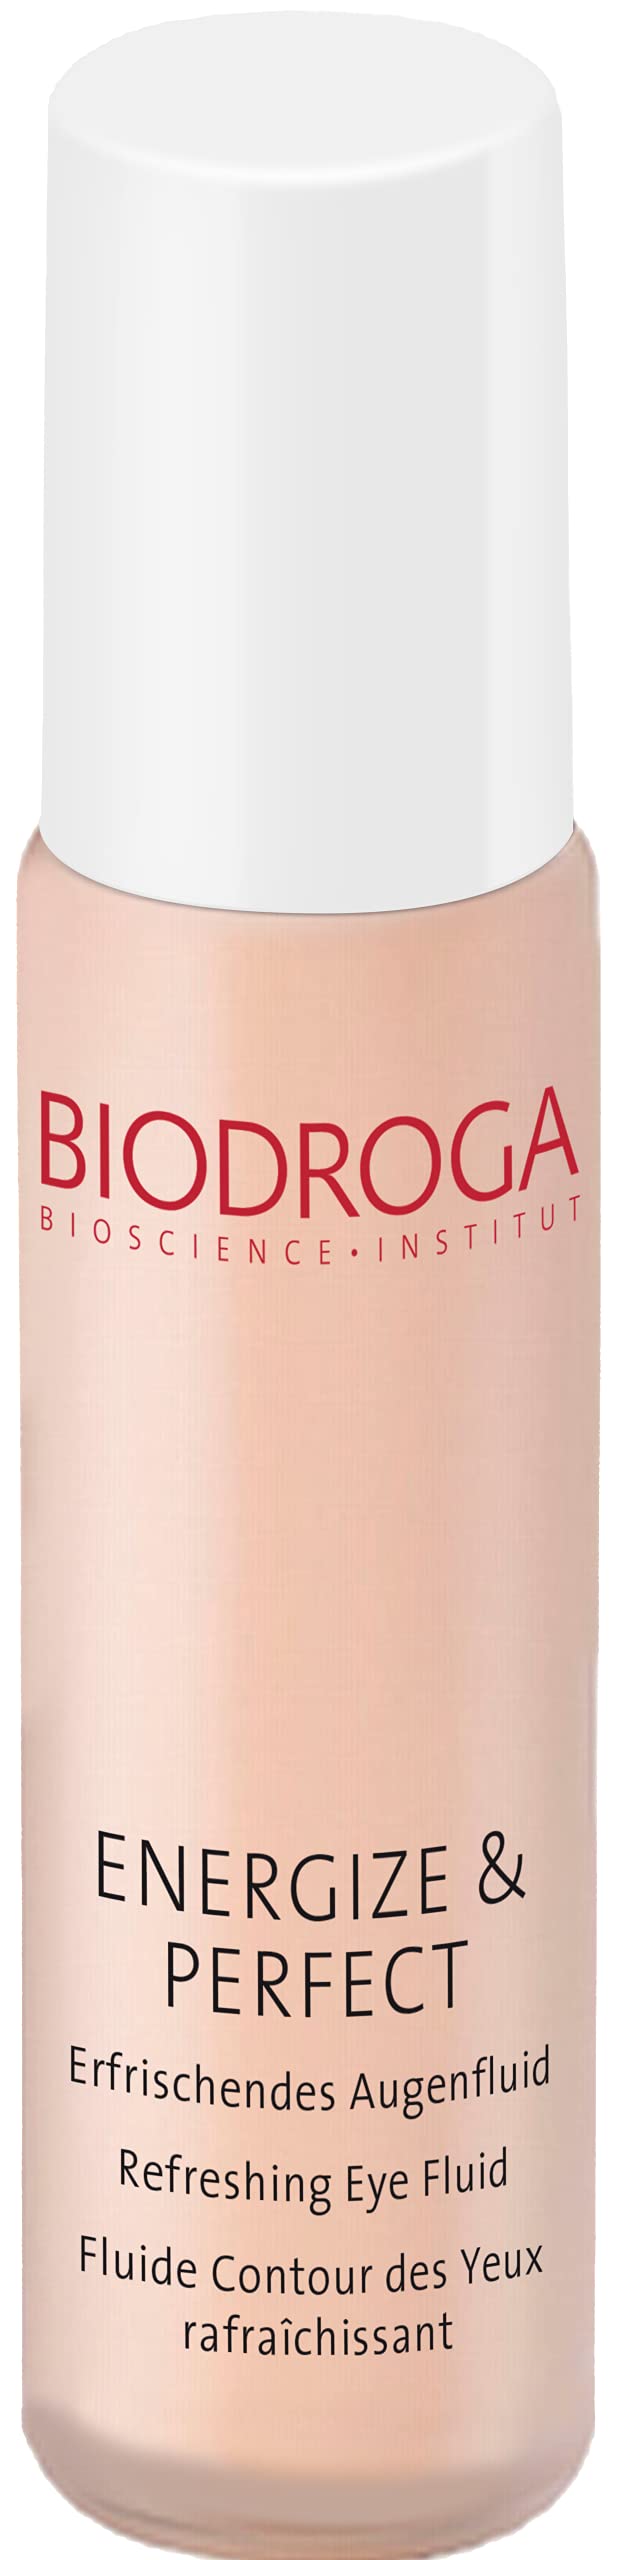 Biodroga Energize & Perfect Refreshing Eye Fluid 10ml/0.3oz - BeesActive Australia